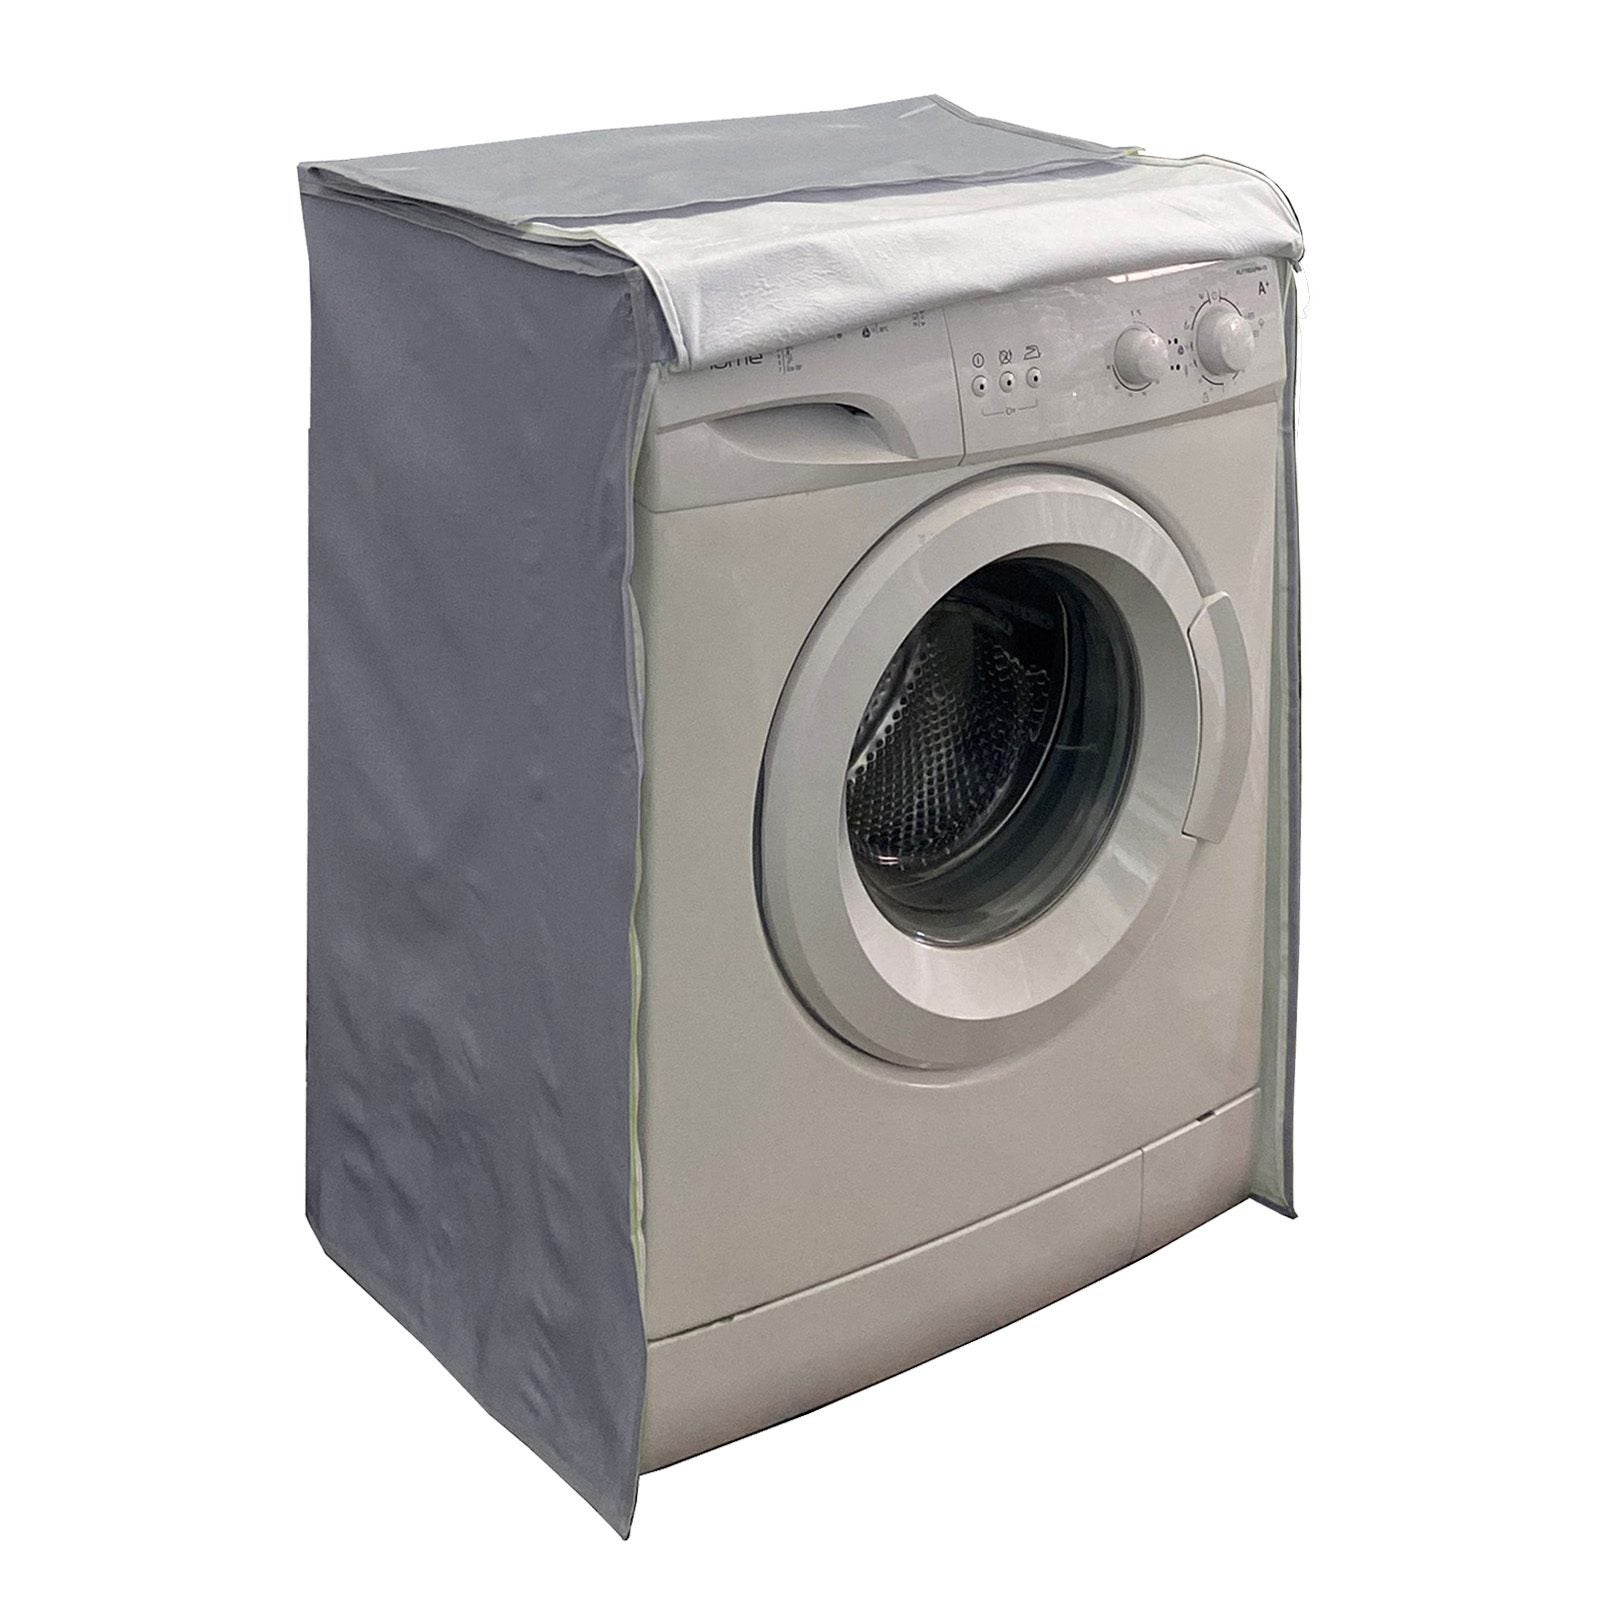 Cobertor Para Lavadora Funda Protector Cover For Washing Machine o Dryer  Cover